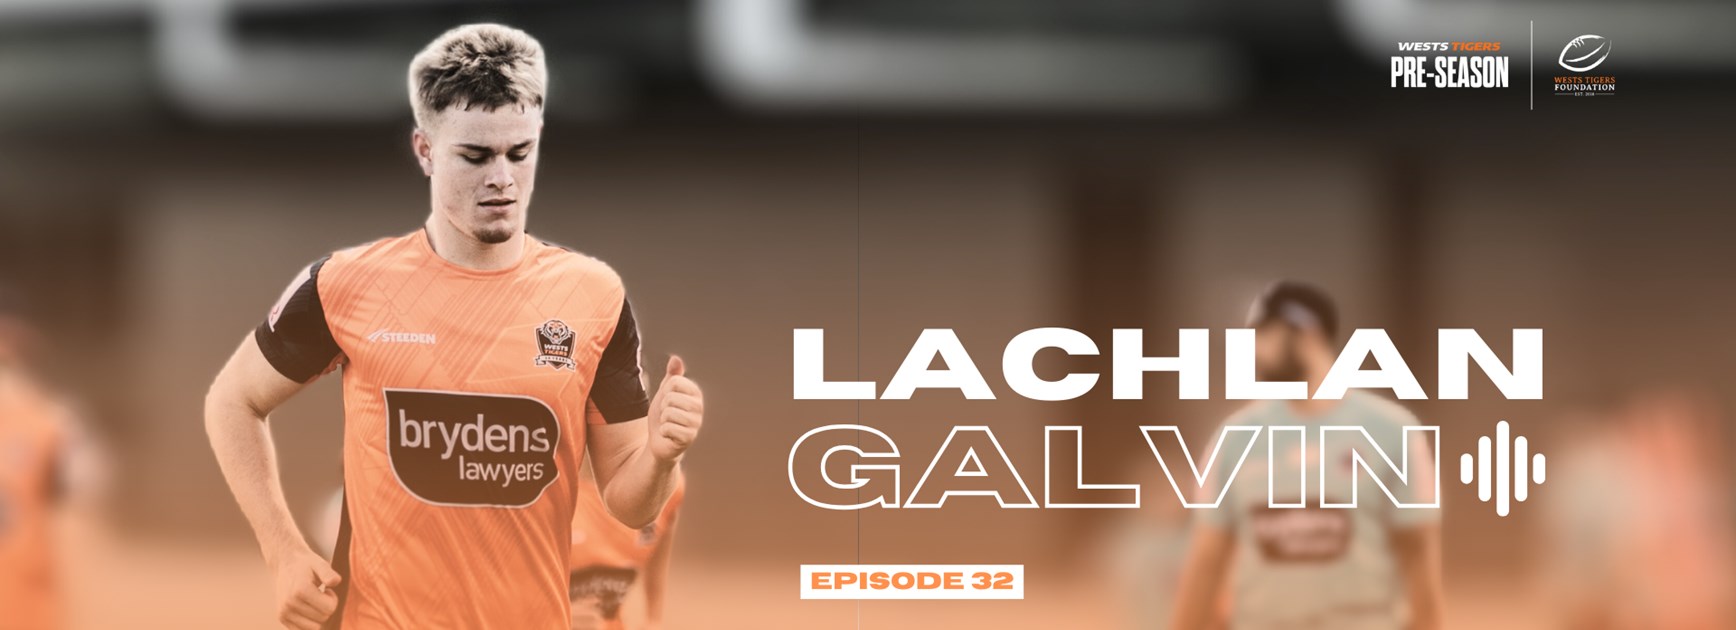 BTR Pre-season Podcast: Lachlan Galvin